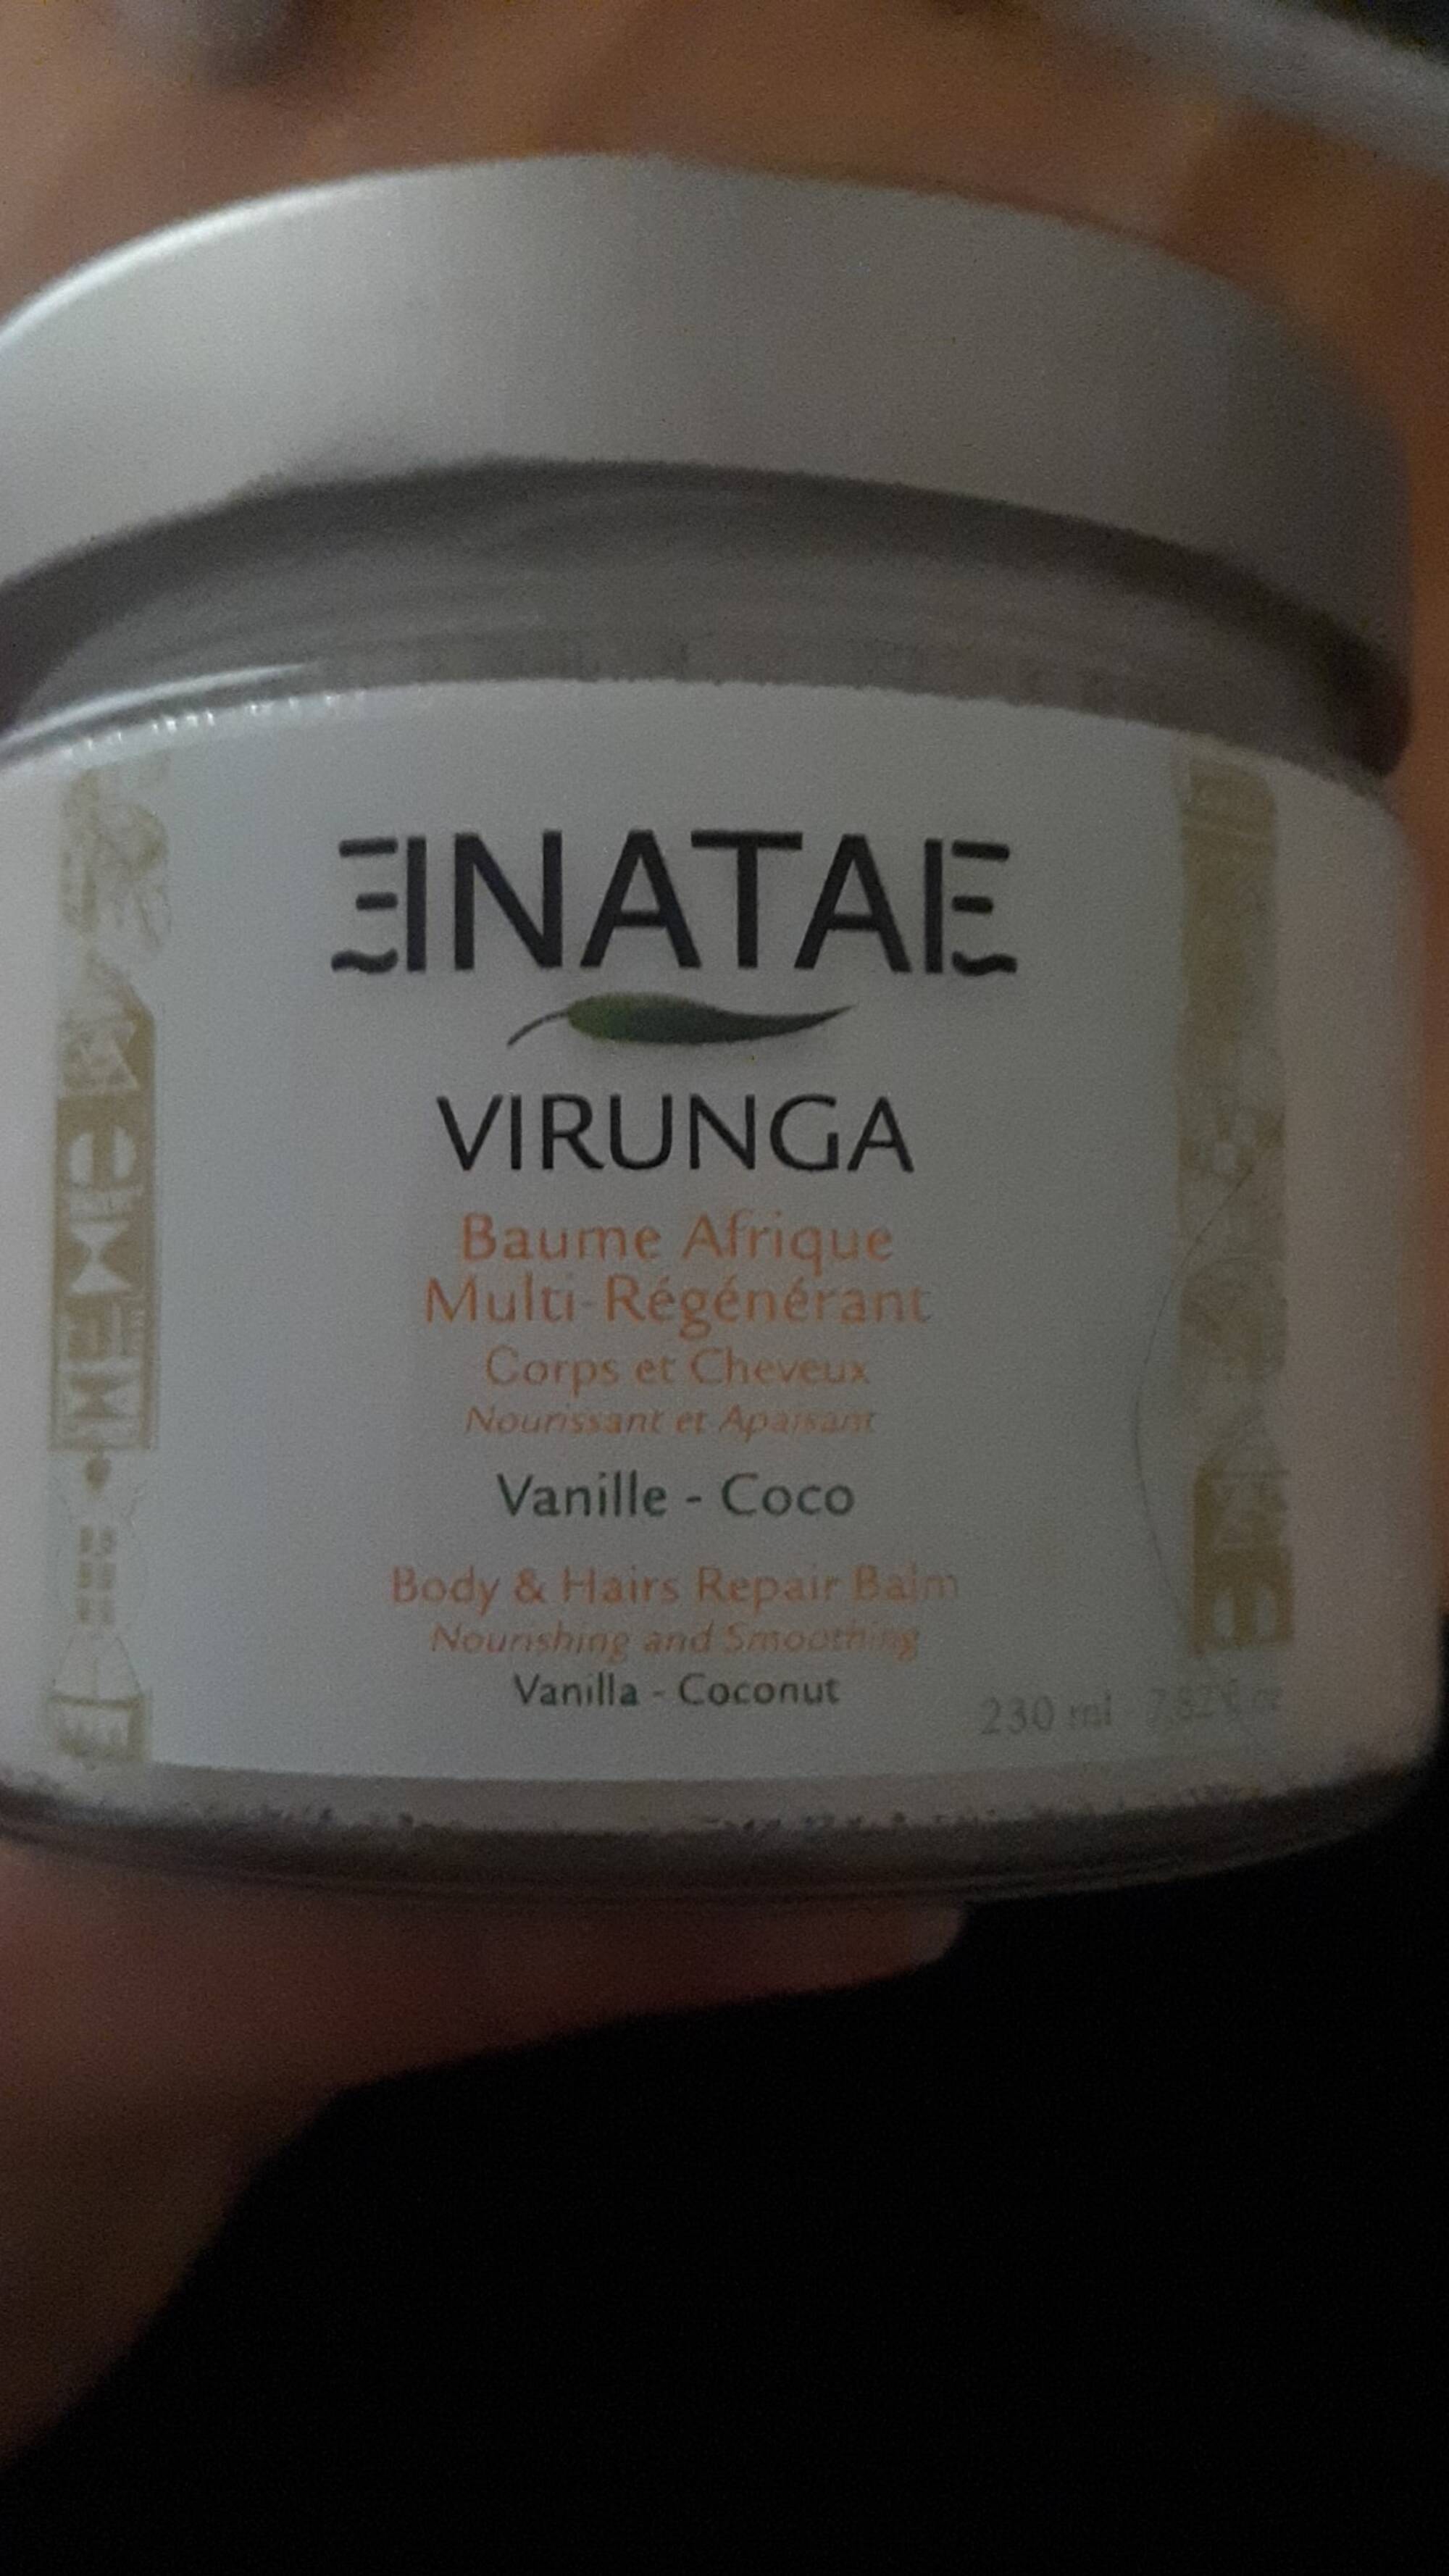 ENATAE - Virunga - Baume afrique multi-régénérant 